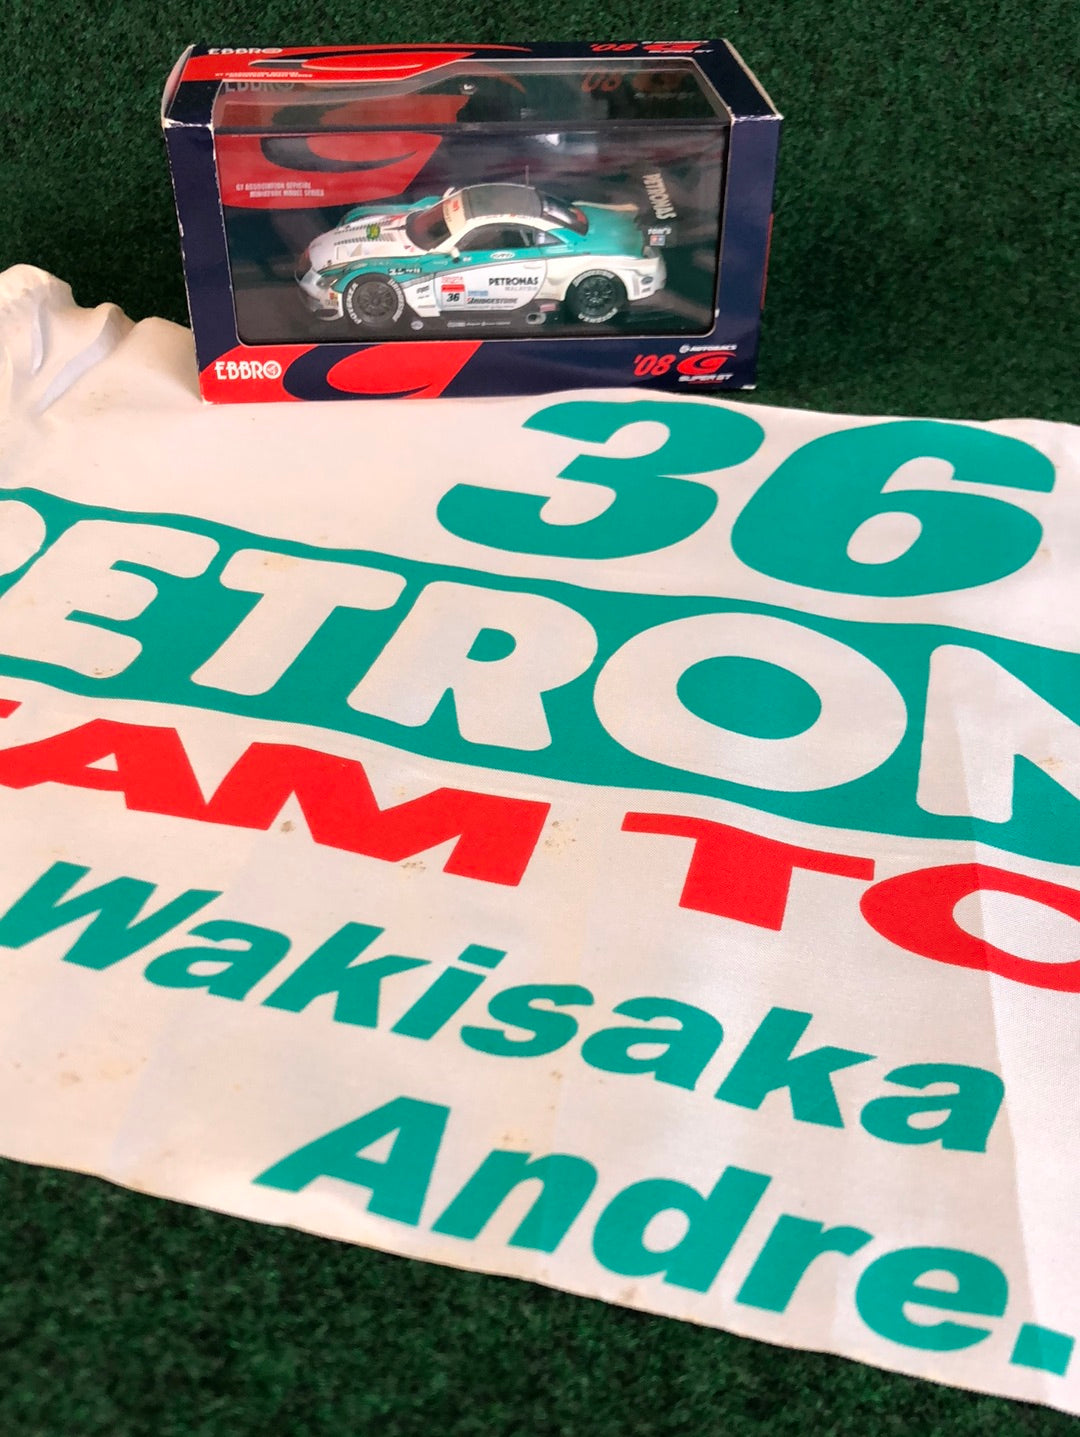 Petronas #36 Lexus Team Tom’s Super GT Event Cheering Flag